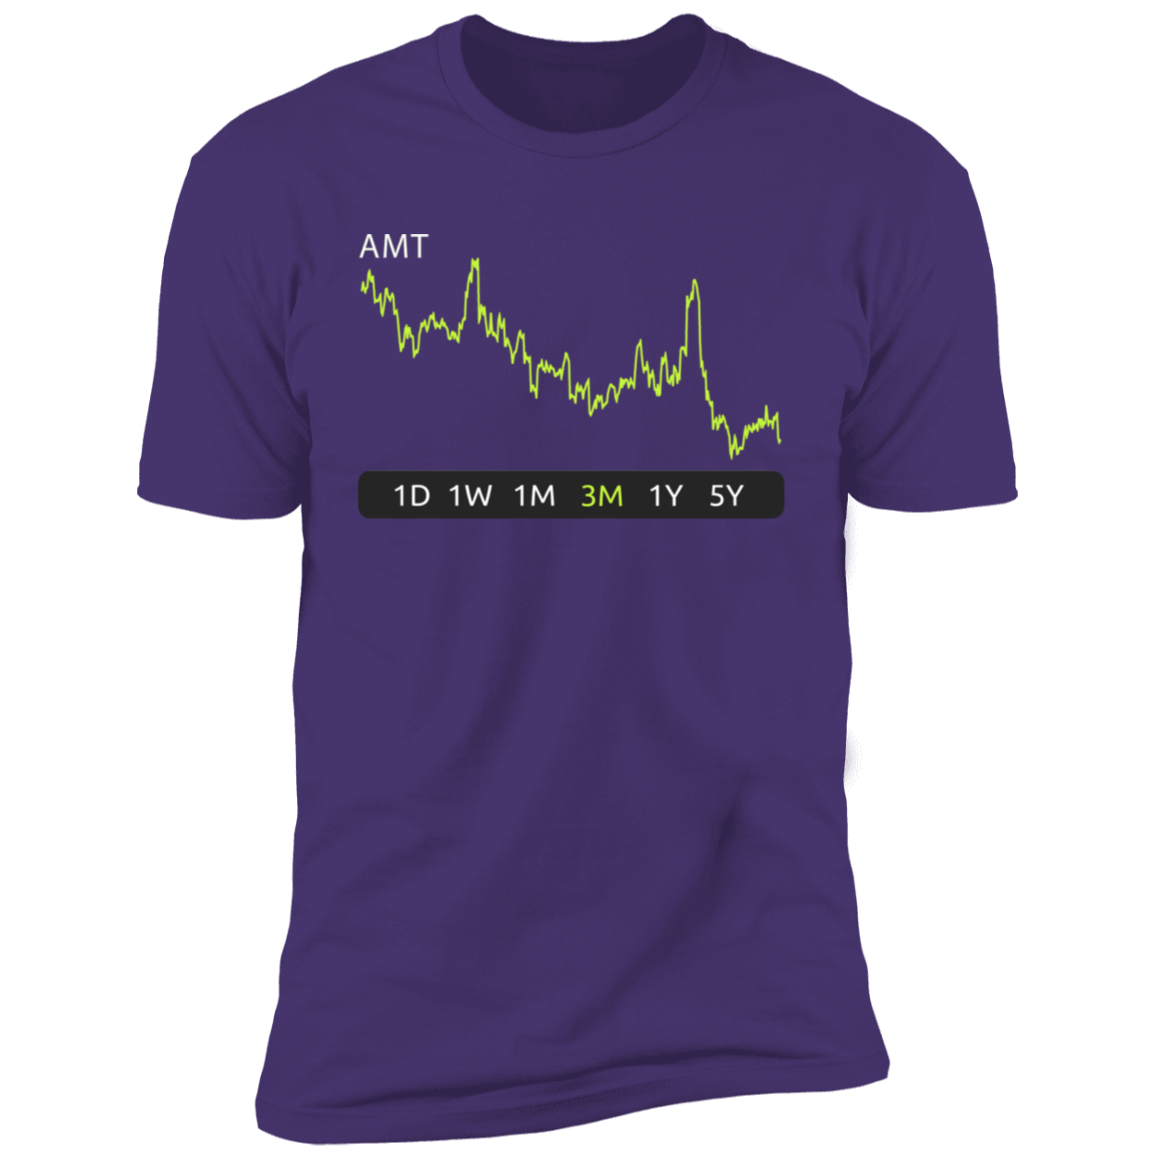 AMT Stock 3m Premium T-Shirt